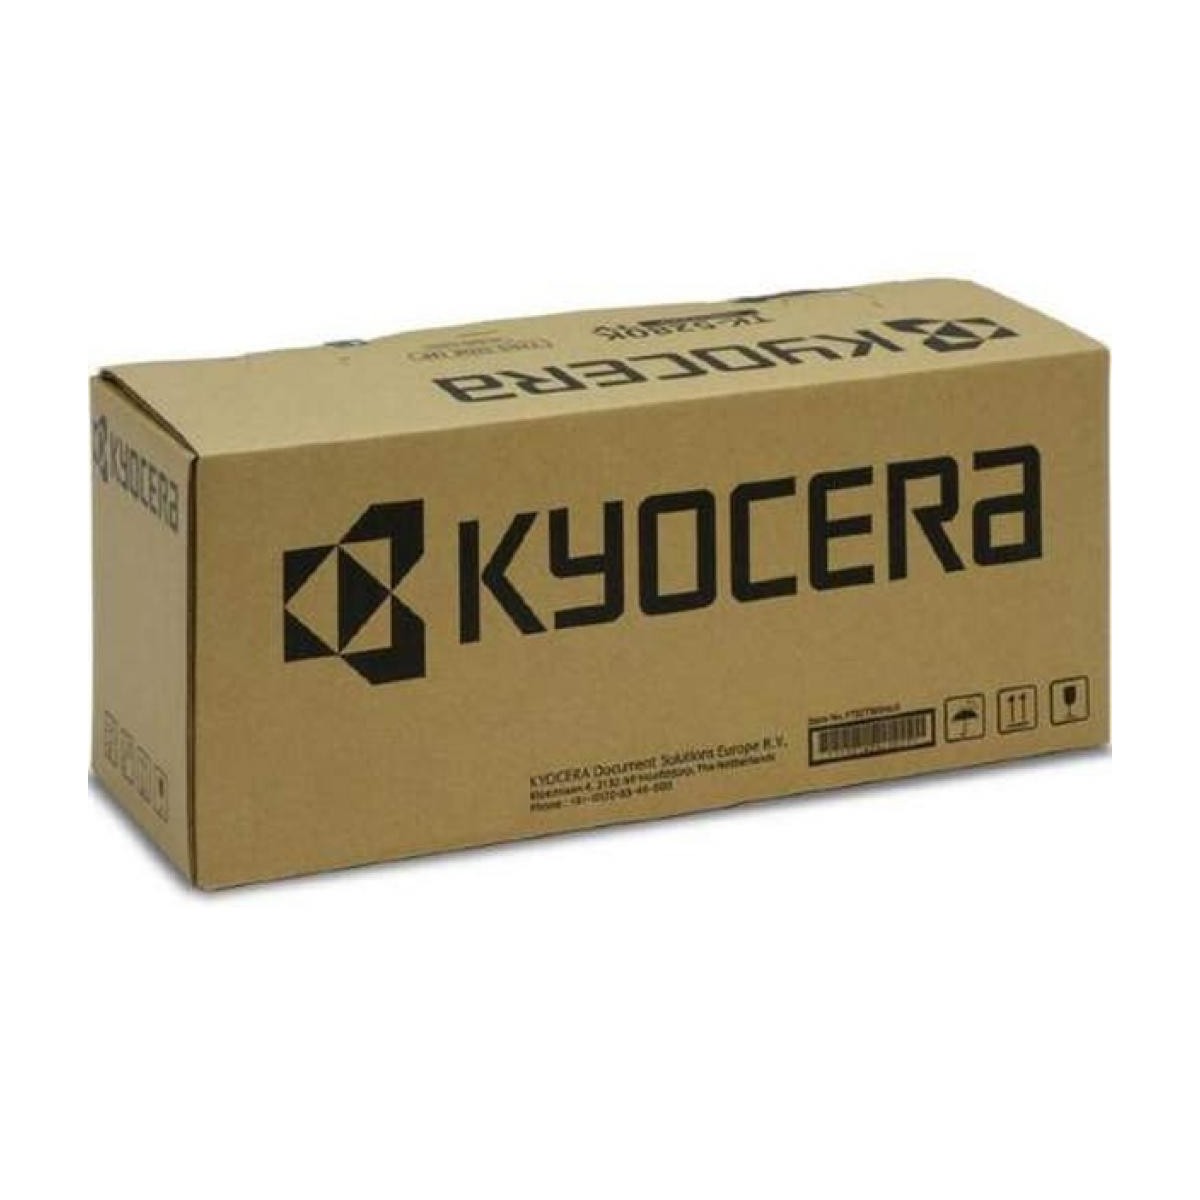 Kyocera DK 24 - Trommel-Kit - für FS-3750